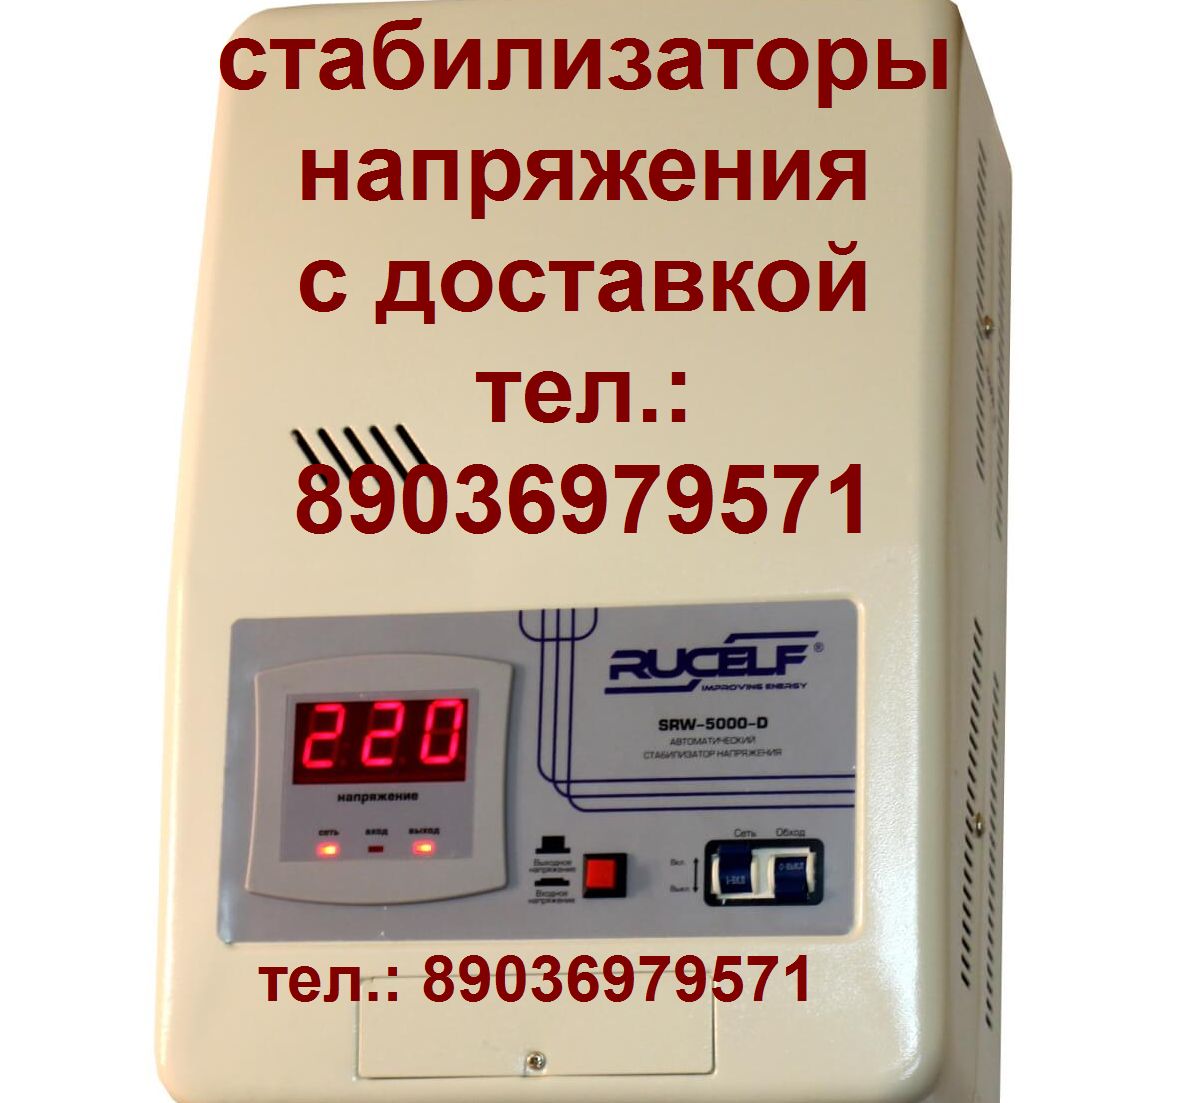 Новый пассик на Вегу 108 пассики Вега 108 Unitra G-602 в городе Москва, фото 2, телефон продавца: +7 (903) 697-95-71